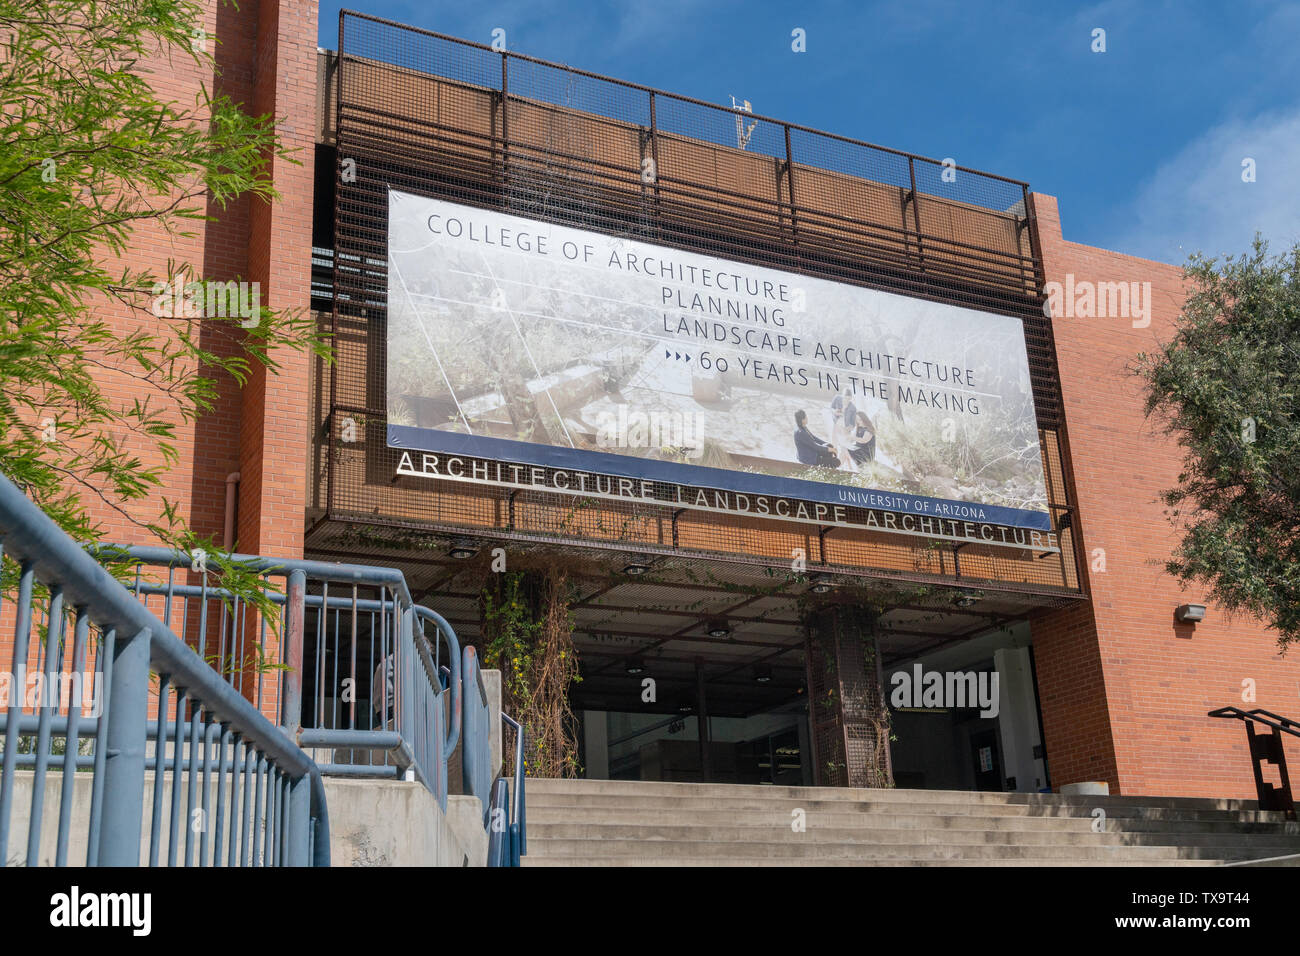 TUCSON, AZ/USA - 11. APRIL 2019: Hochschule für Architektur und Landschaft auf dem Campus der Universität von Arizona. Stockfoto